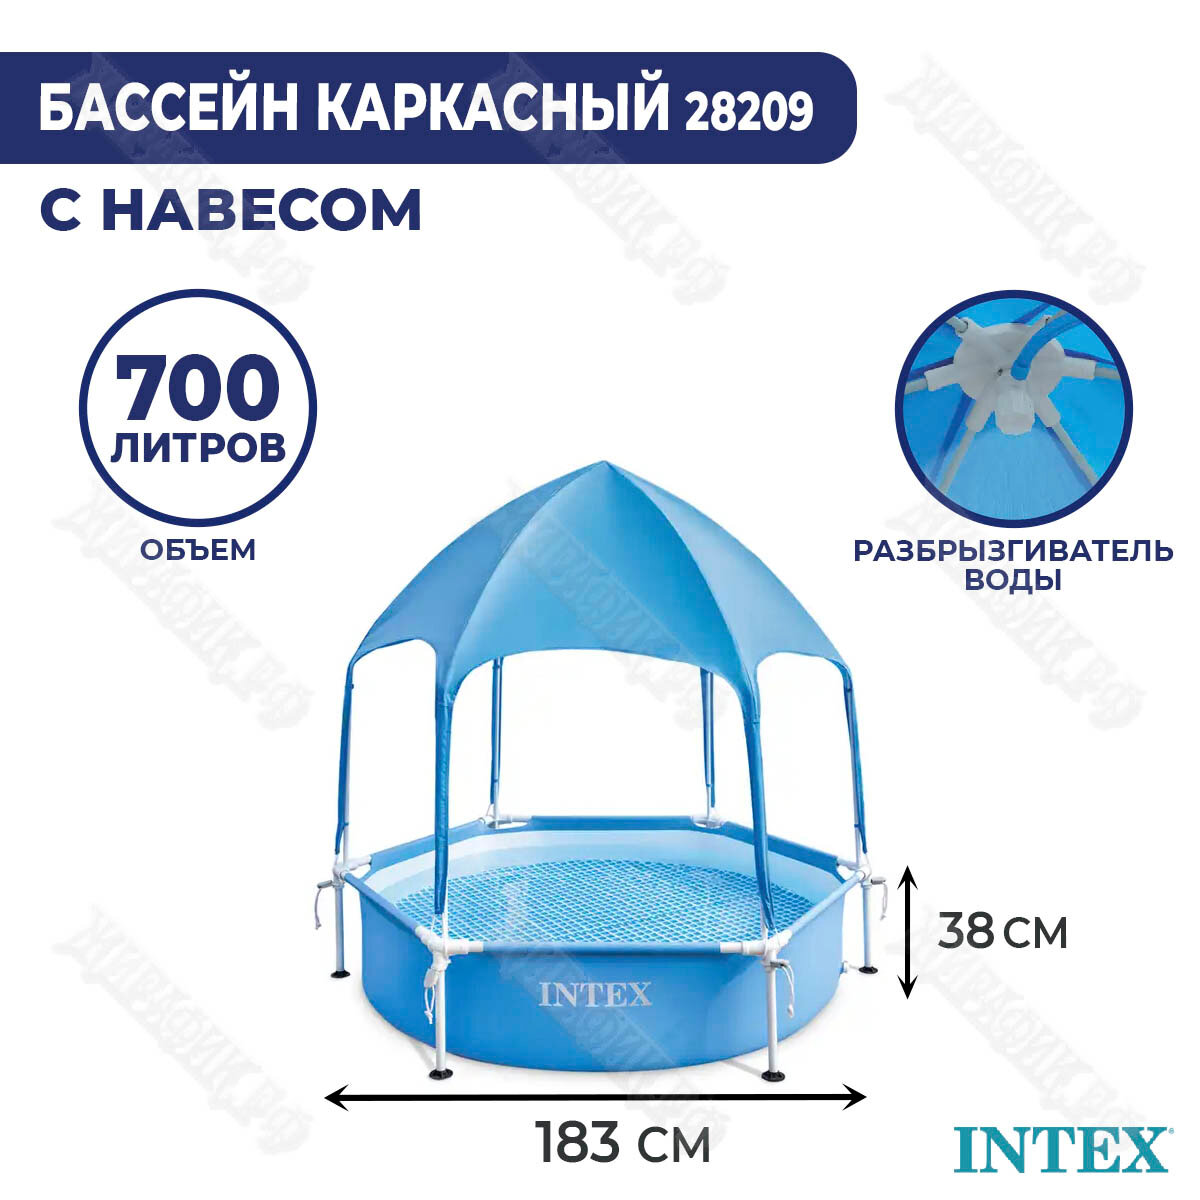 Каркасный бассейн Intex Canopy Metal Frame 183х38см с навесом 28209 - фотография № 1